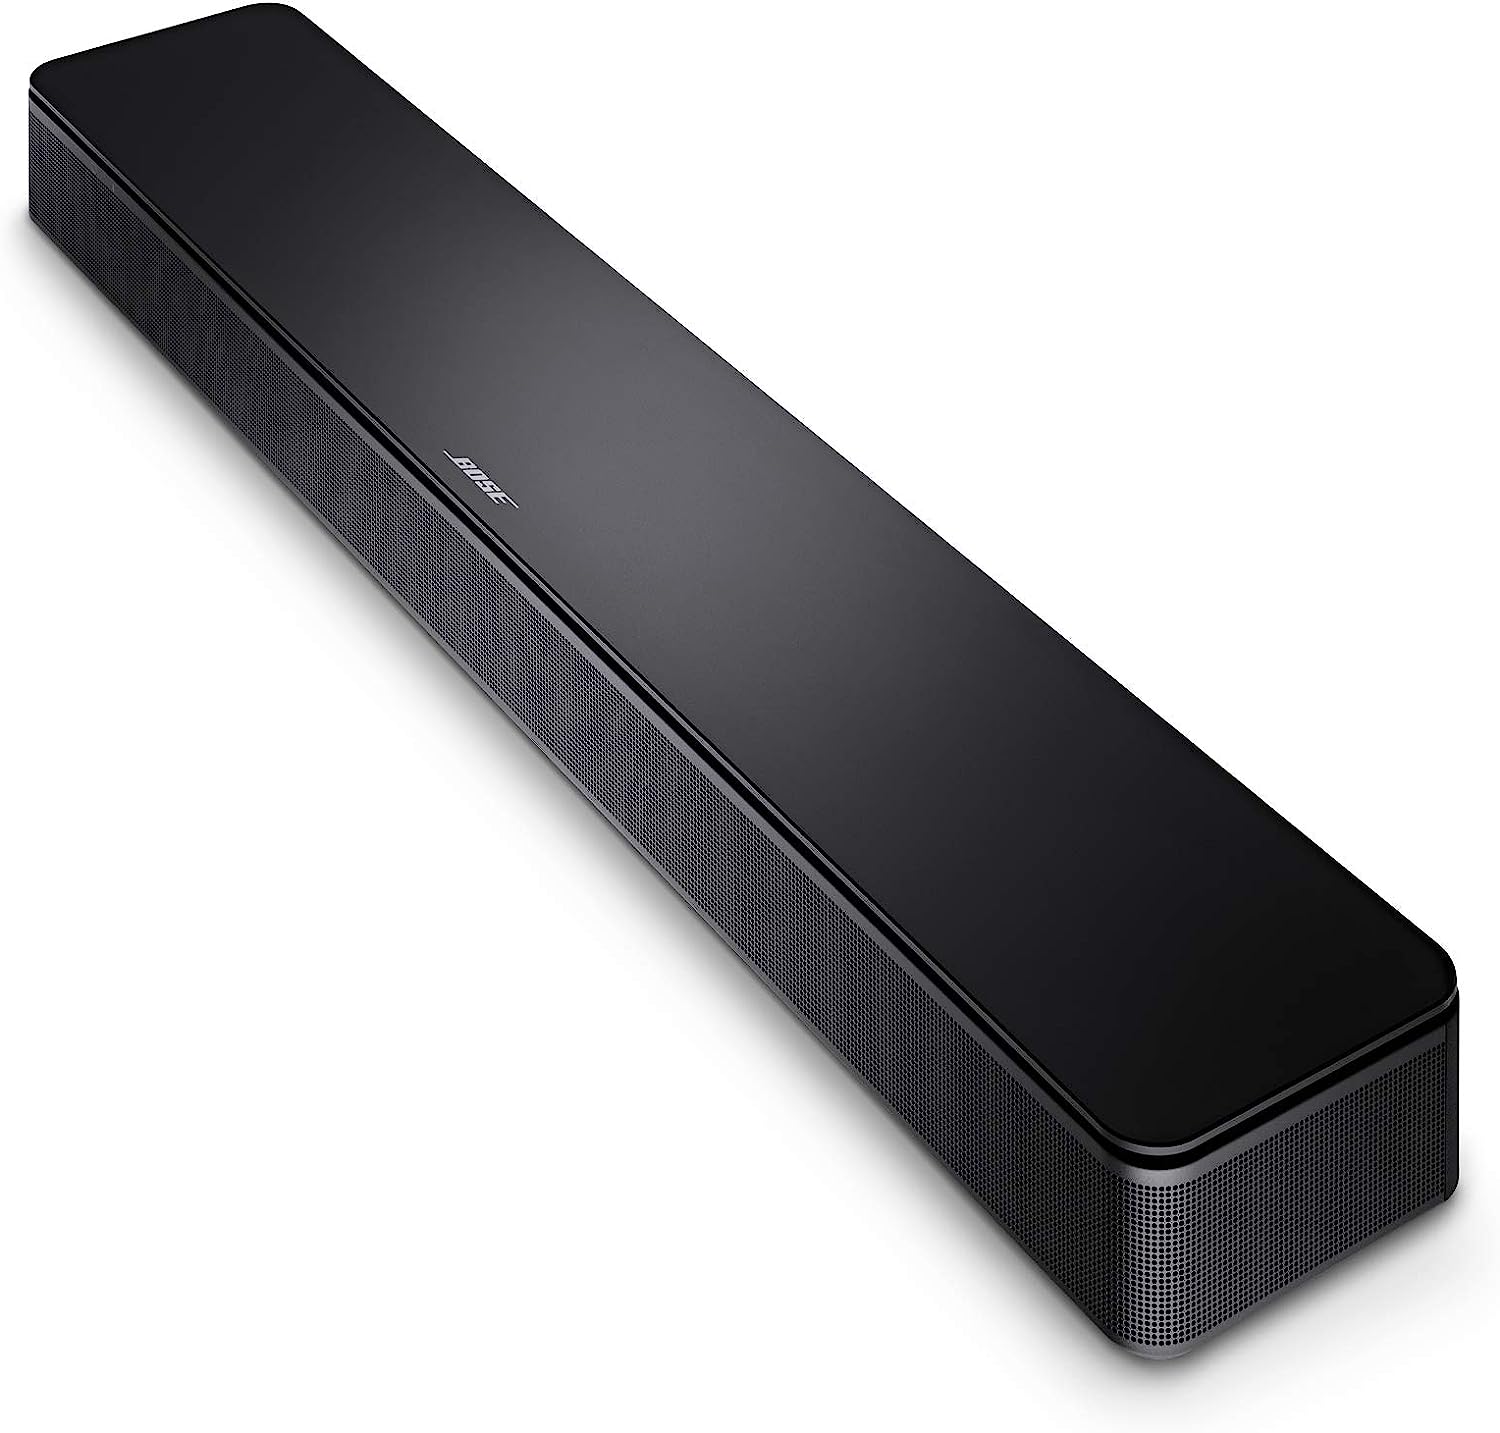 Bild zu Bose TV Speaker Soundbar mit Bluetooth-Verbindung für 189,95€ (Vergleich: 218,75€)